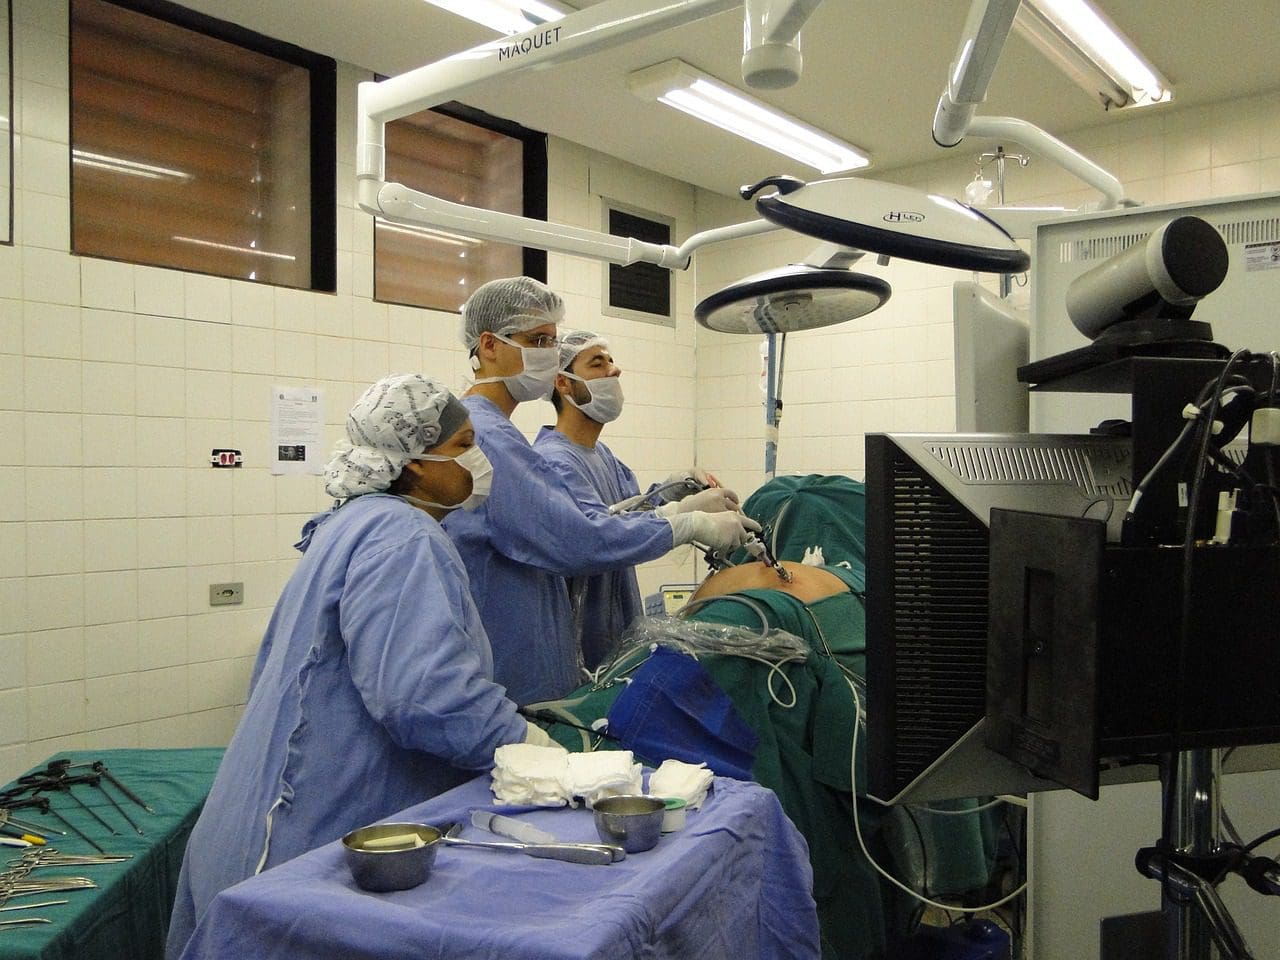 laparoscopia